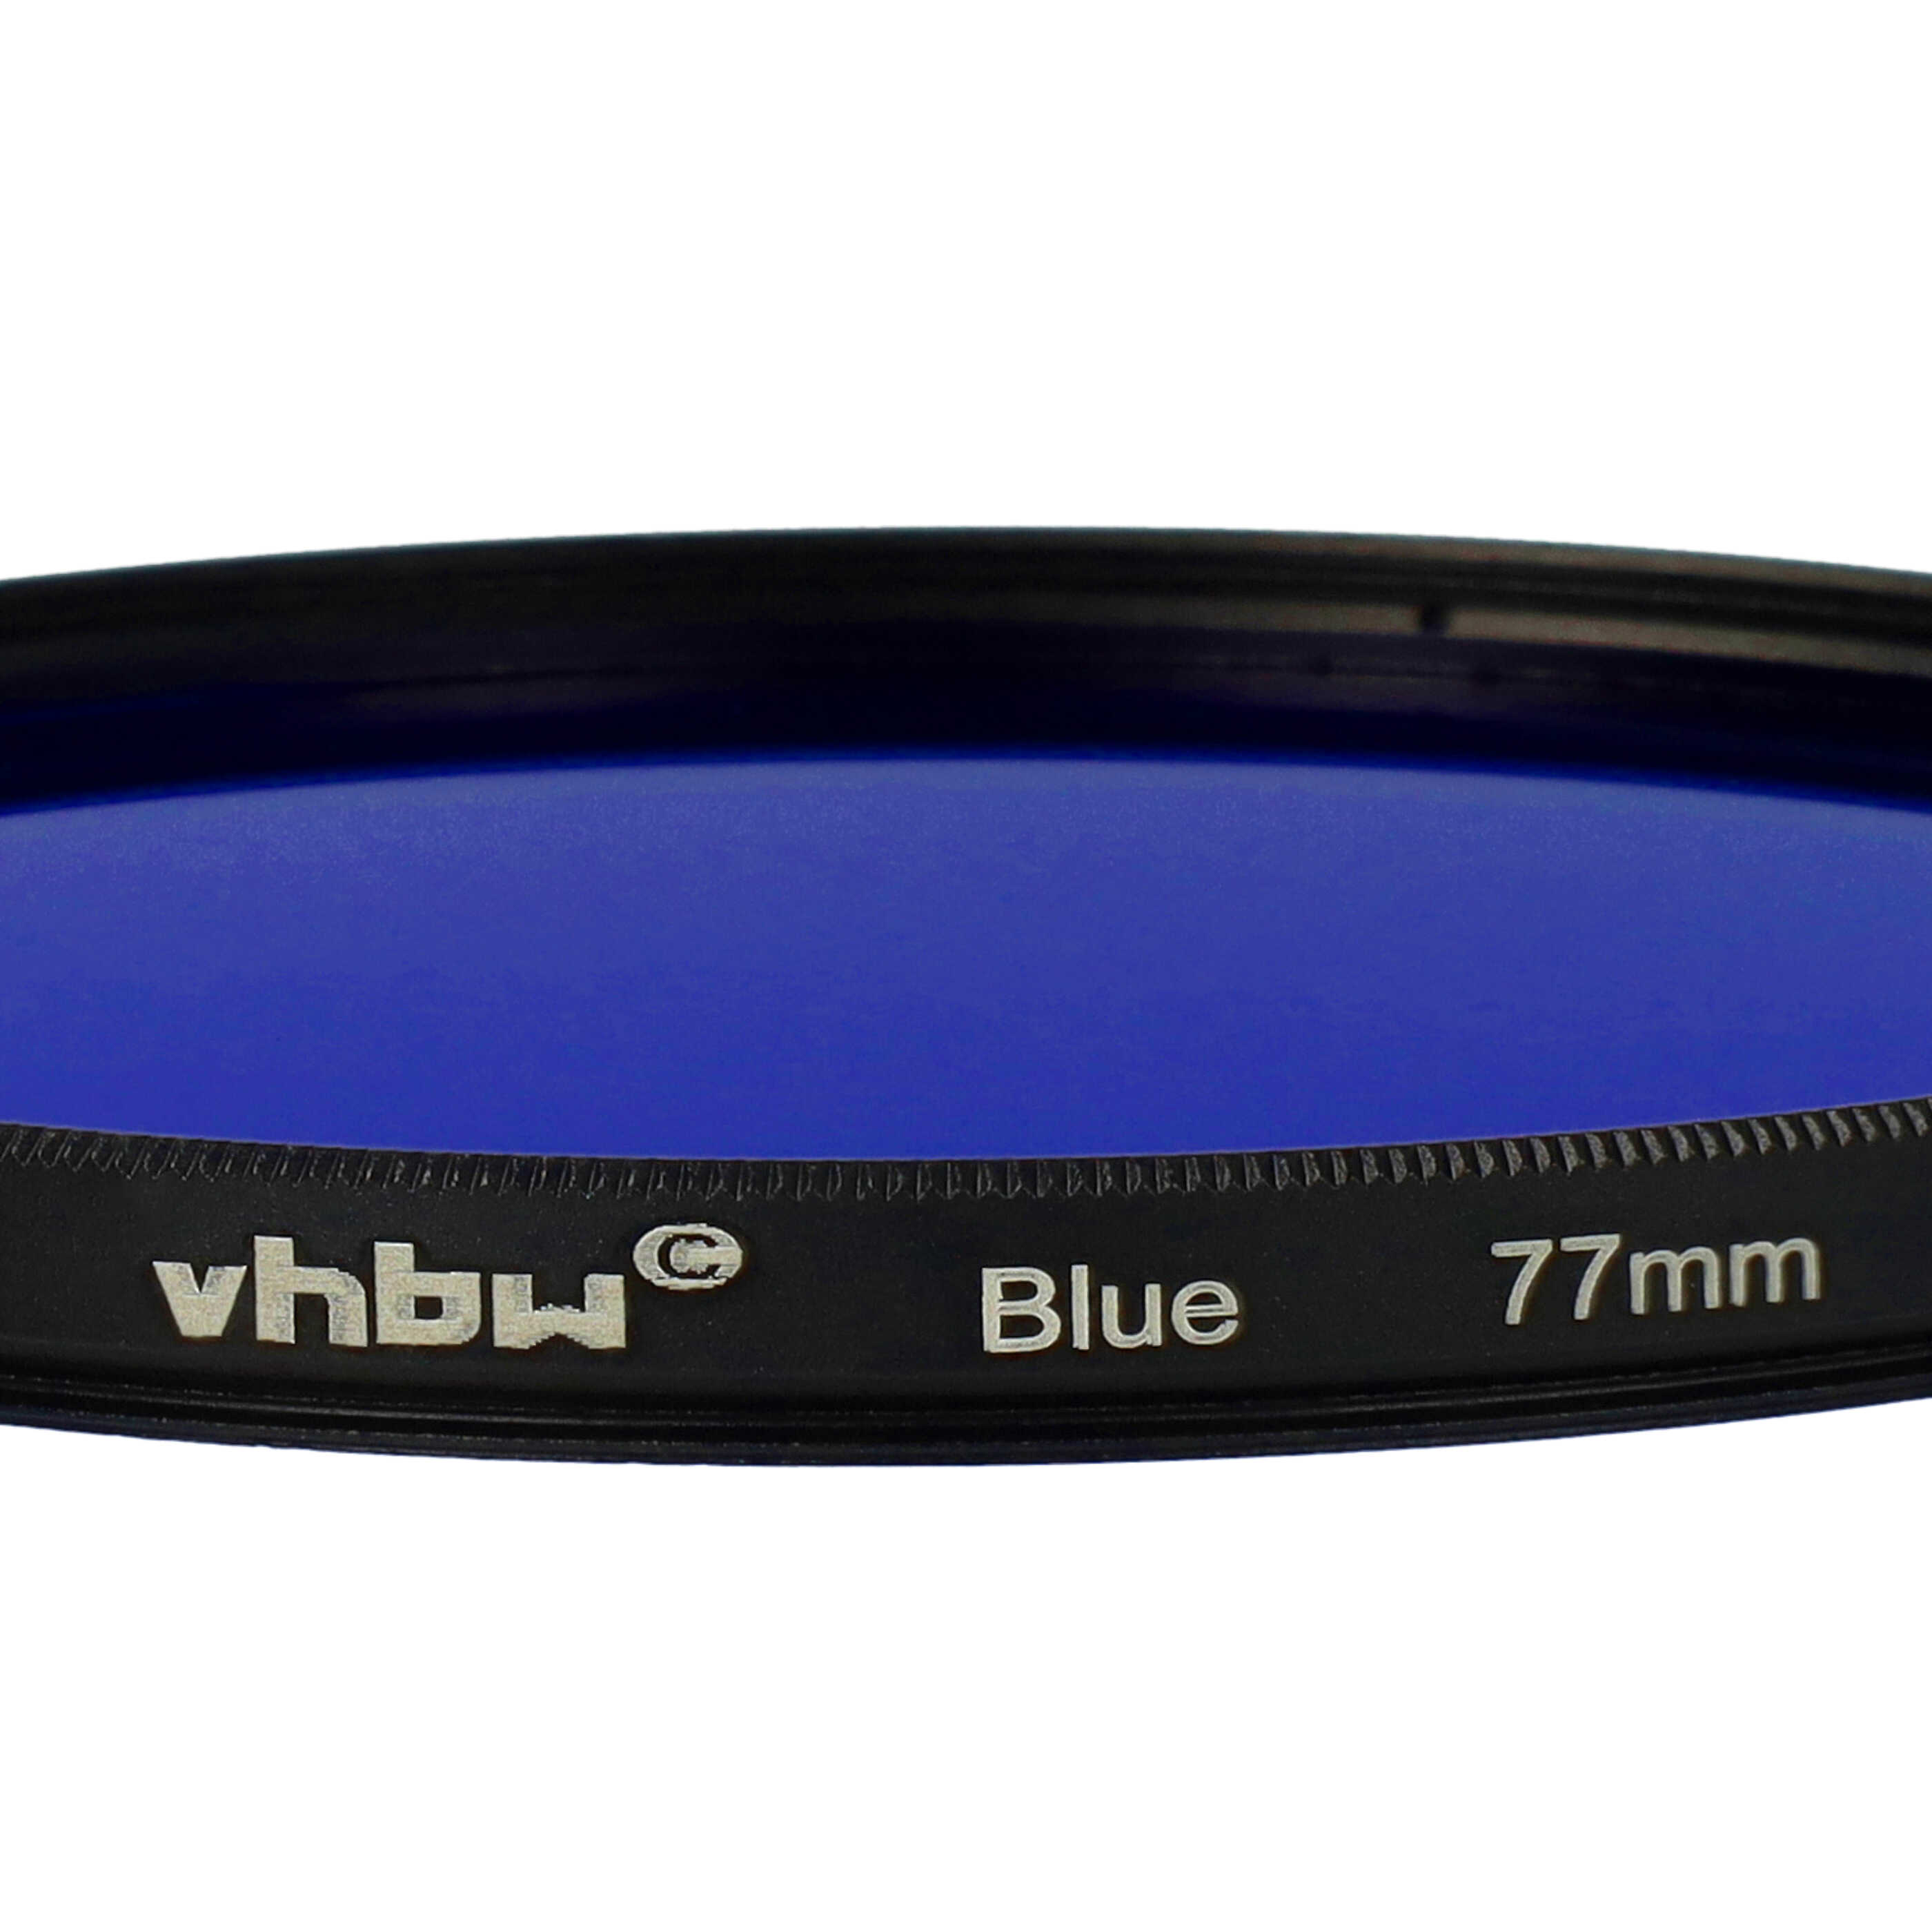 Farbfilter blau passend für Kamera Objektive mit 77 mm Filtergewinde - Blaufilter